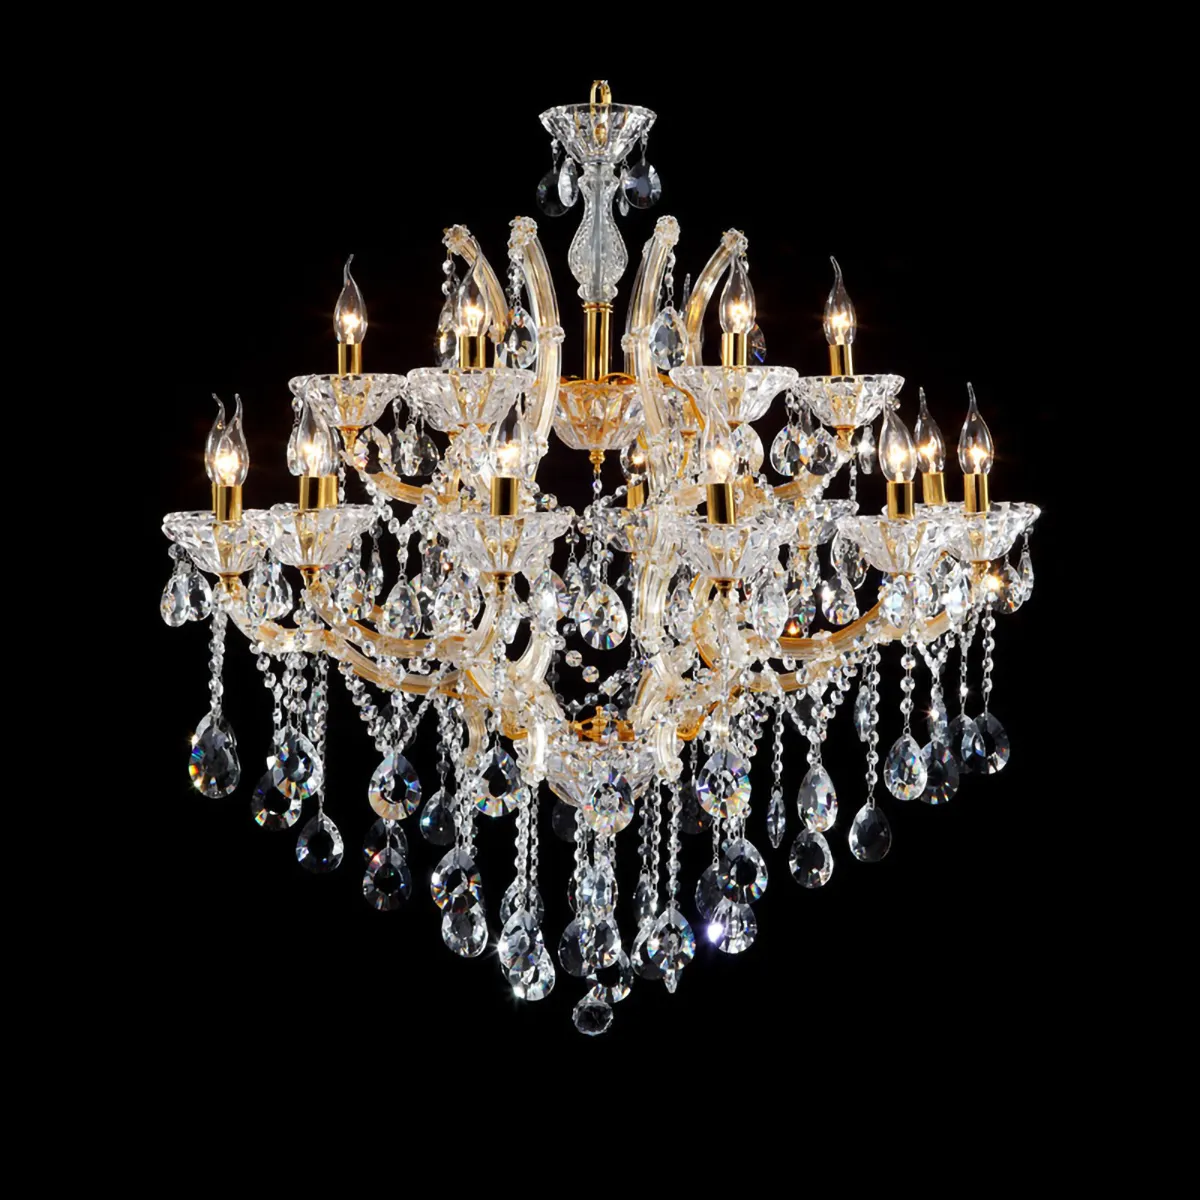 Meerosee с украшением в виде кристаллов Maria Theresa люстра потолочного освещения Королевский современная люстра для гостиной свет MD7001-L18